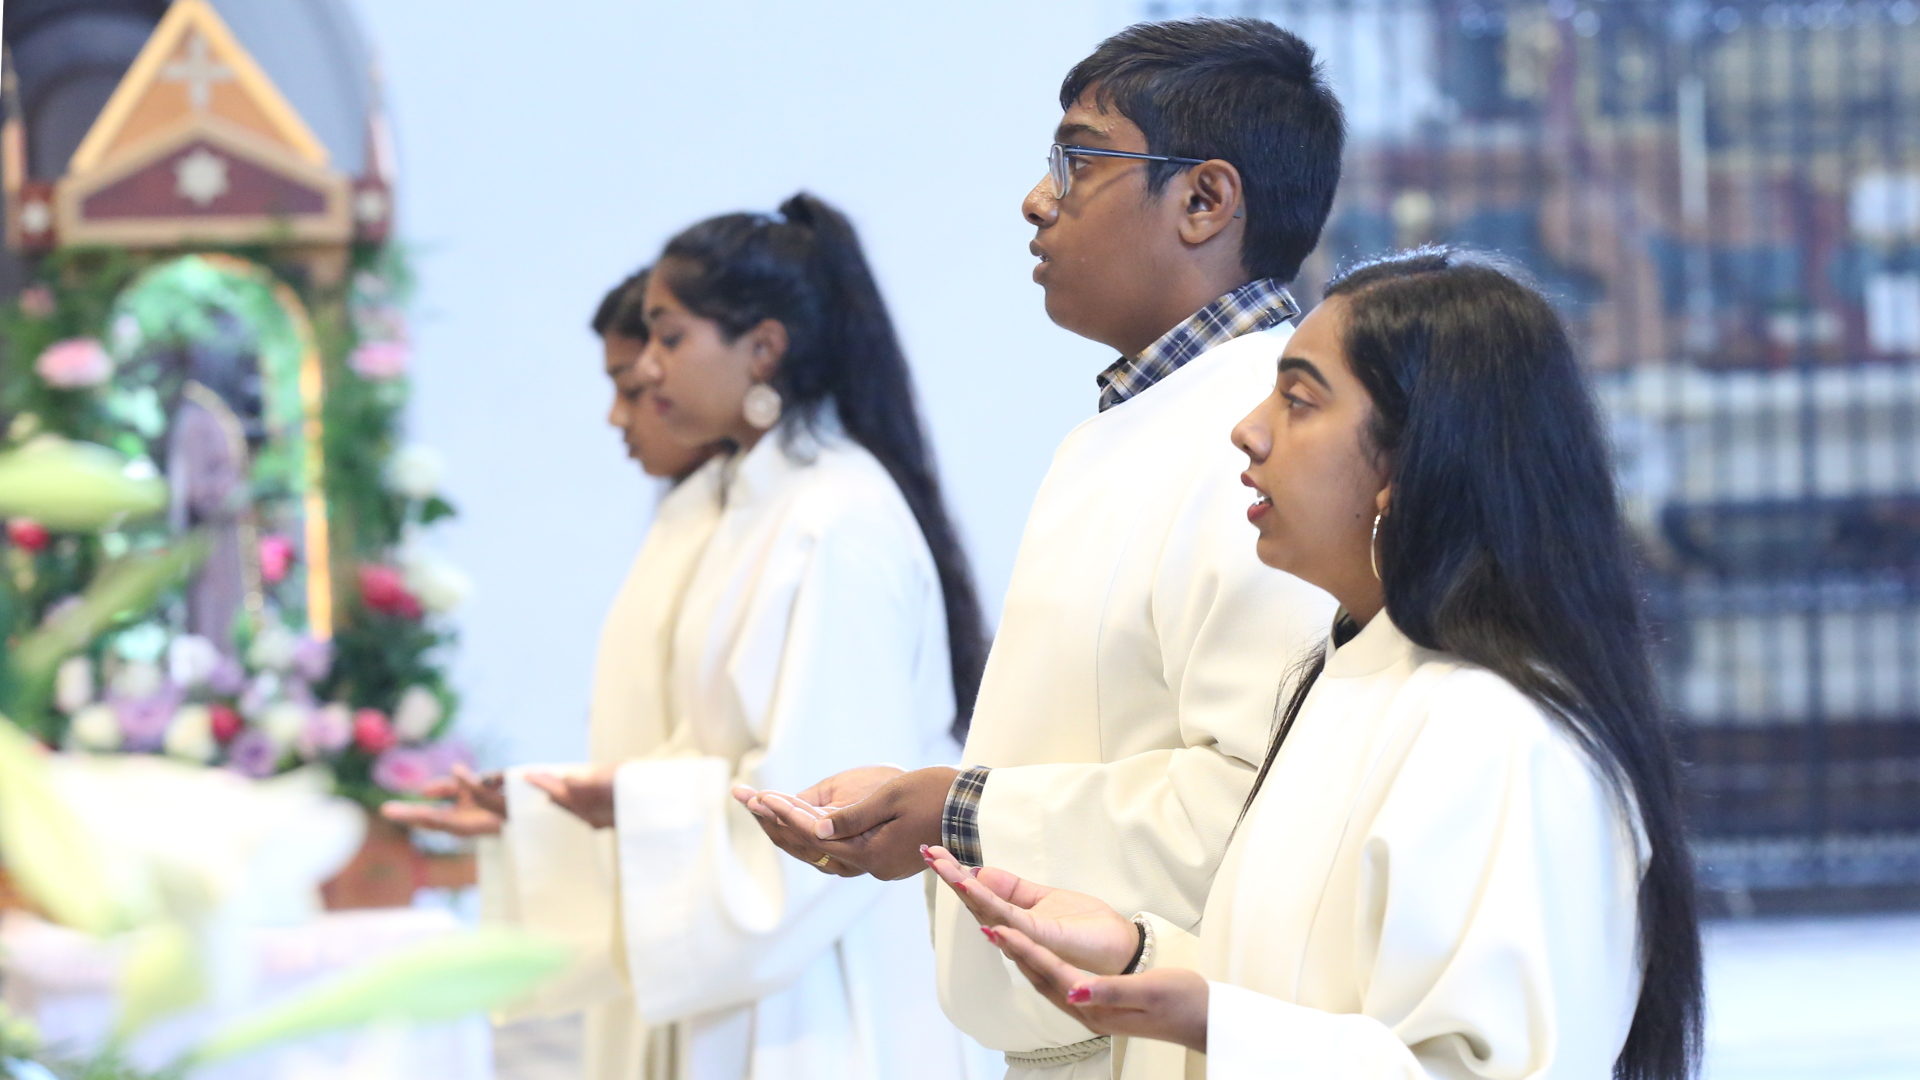 Ministranten und Ministrantinnen im tamilischen Gottesdienst in Einsiedeln